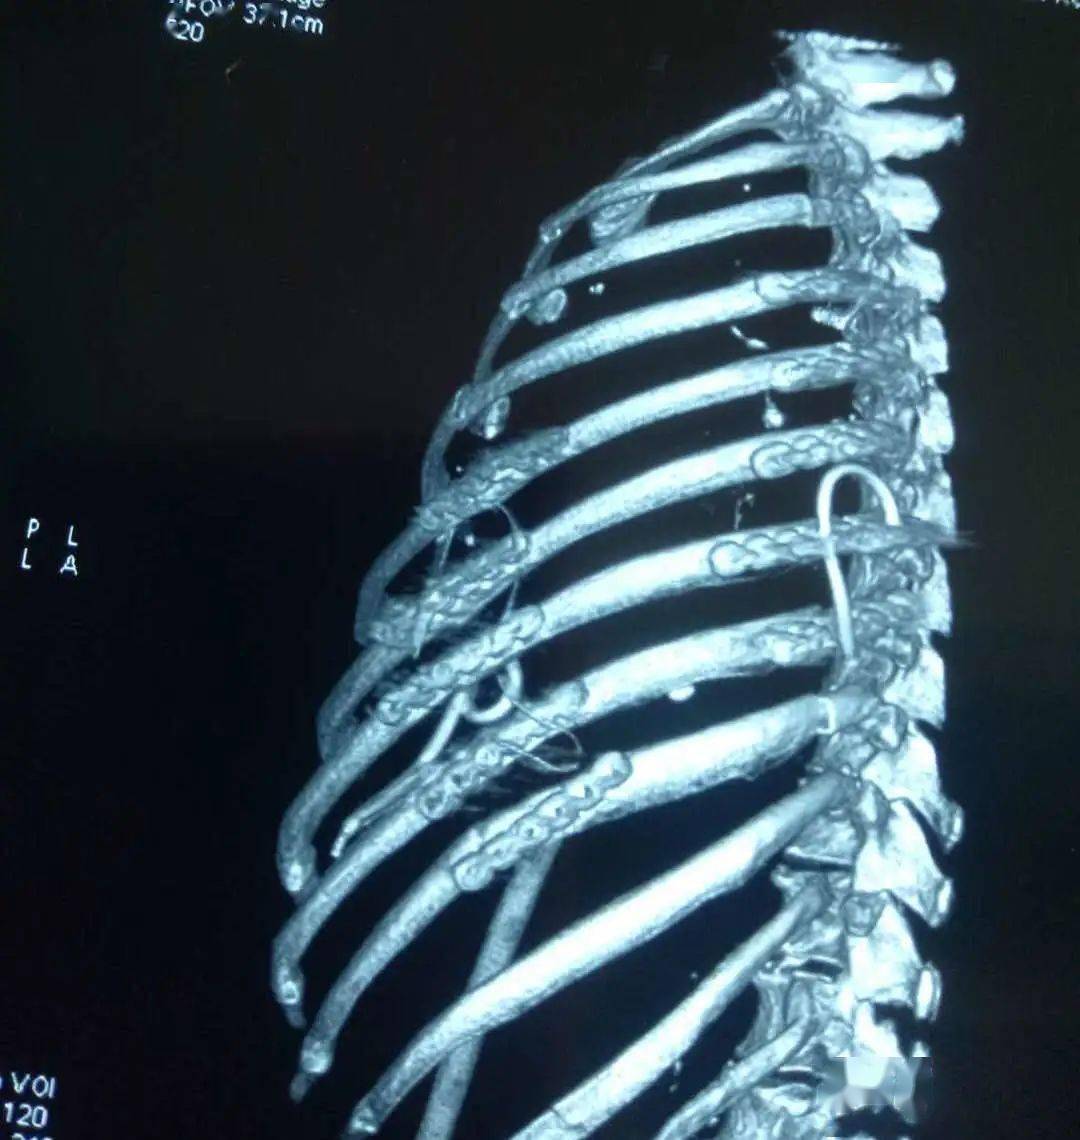 为什么肋骨骨折CT扫描一定要做三维成像-MedSci.cn